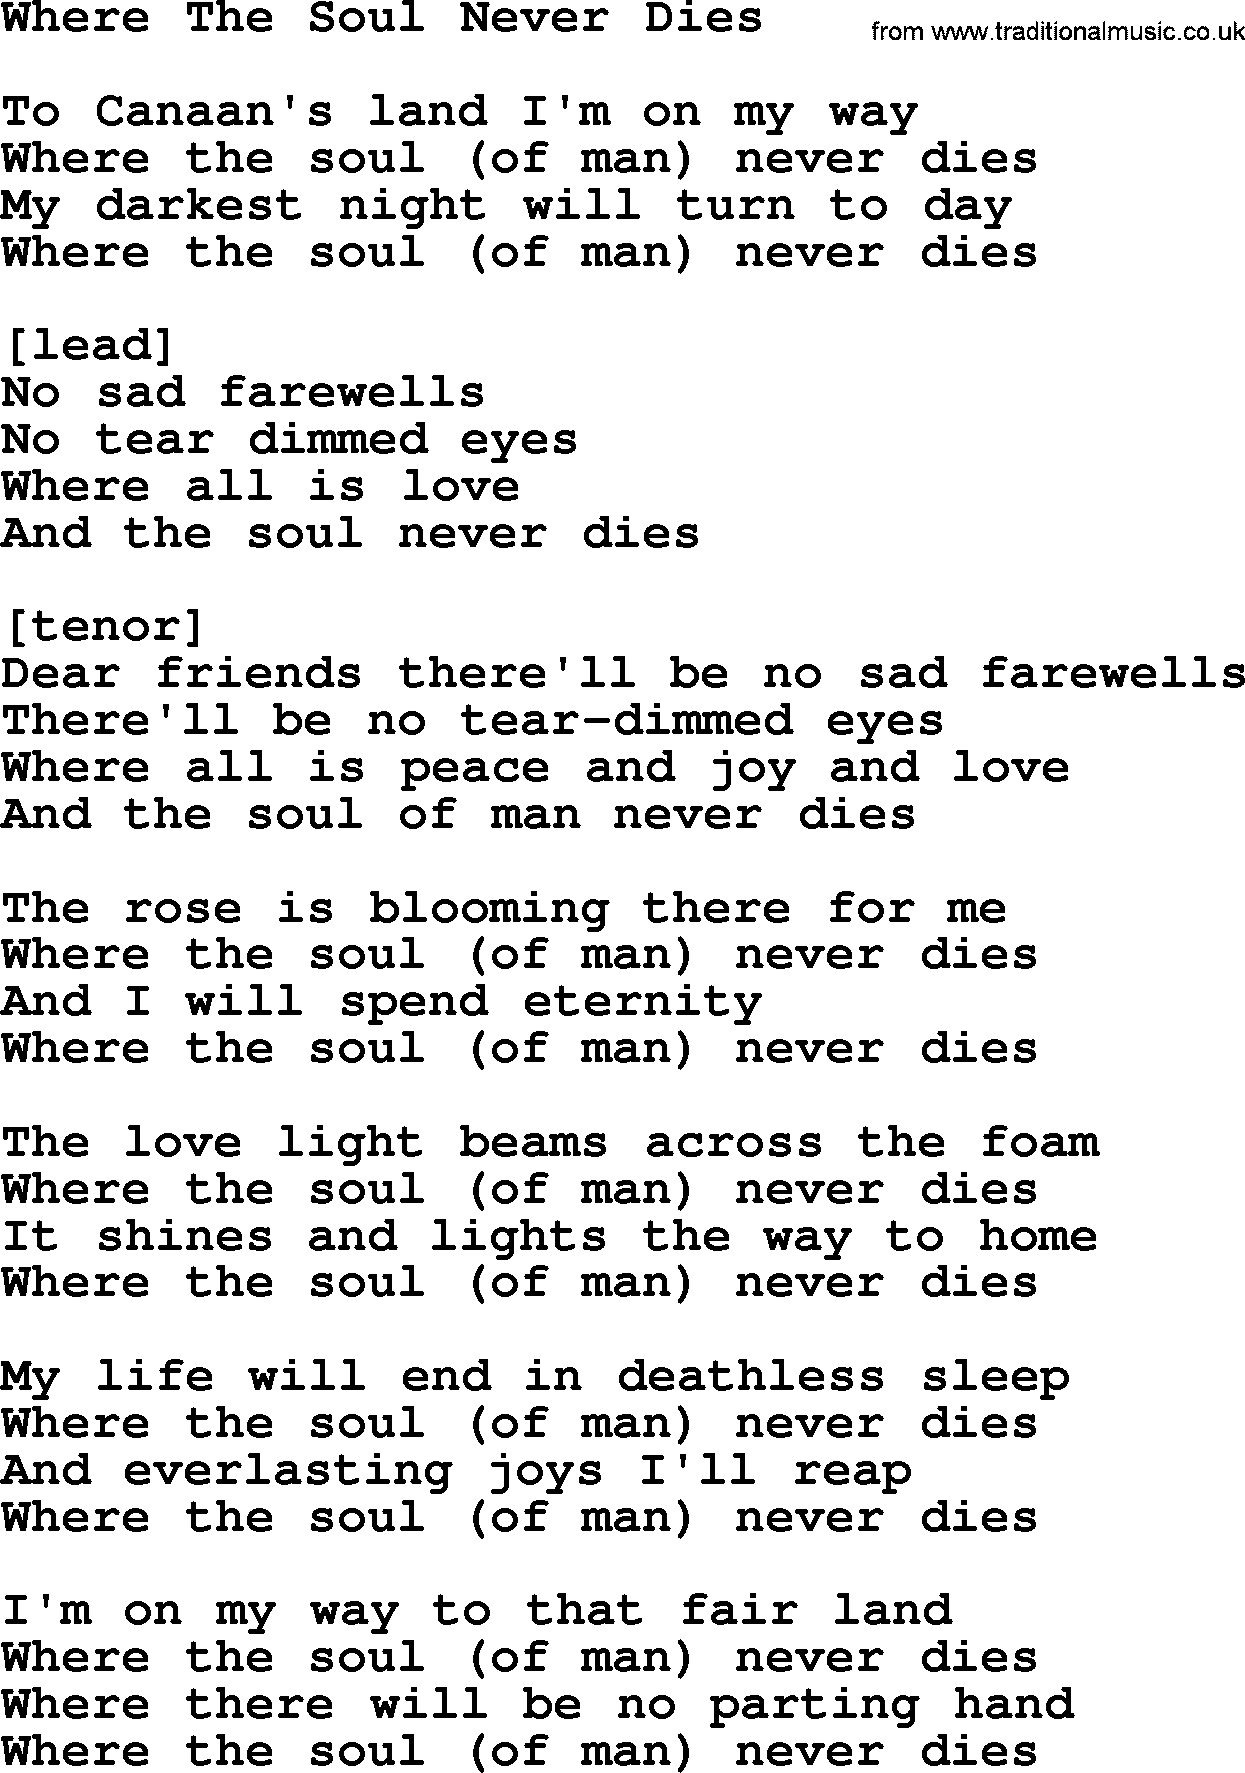 Willie Nelson song: Where The Soul Never Dies lyrics